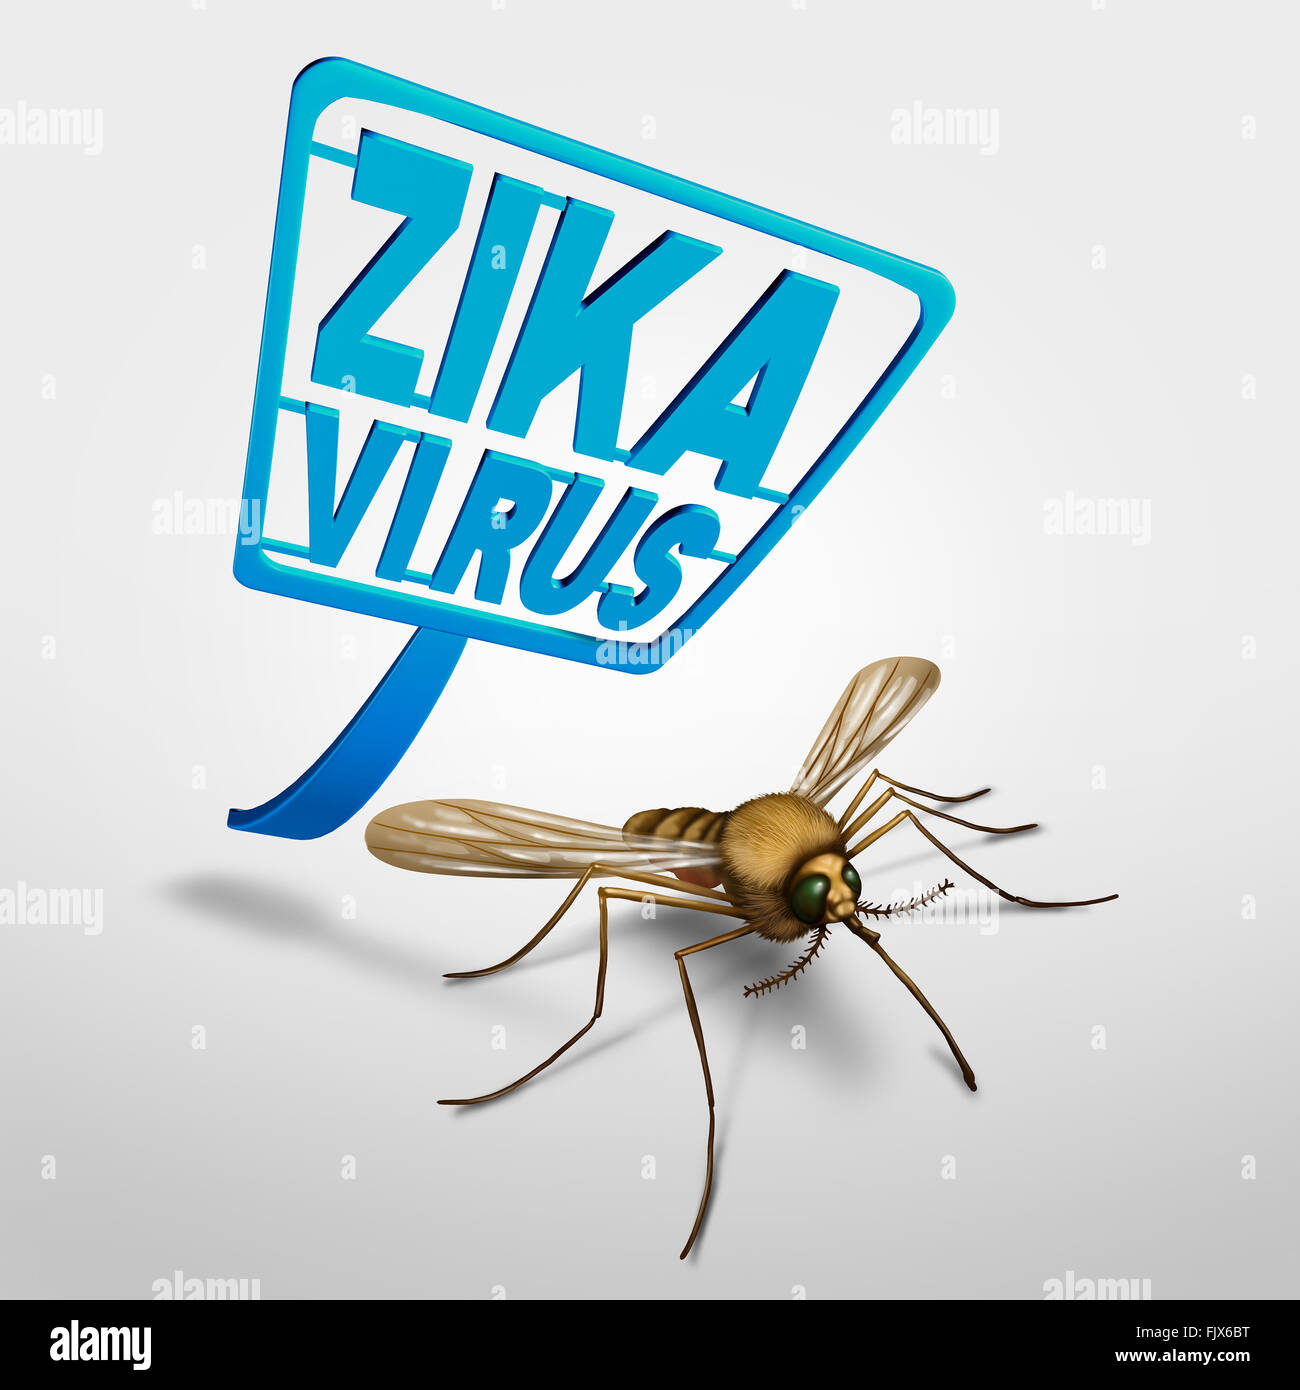 Zika Virus Kontroll- und Risikomanagementsystem Symbol als eine Fliegenklatsche Angriff auf eine infizierte Krankheit tragen Mosquitto, die die Gesundheit darstellt Stockfoto